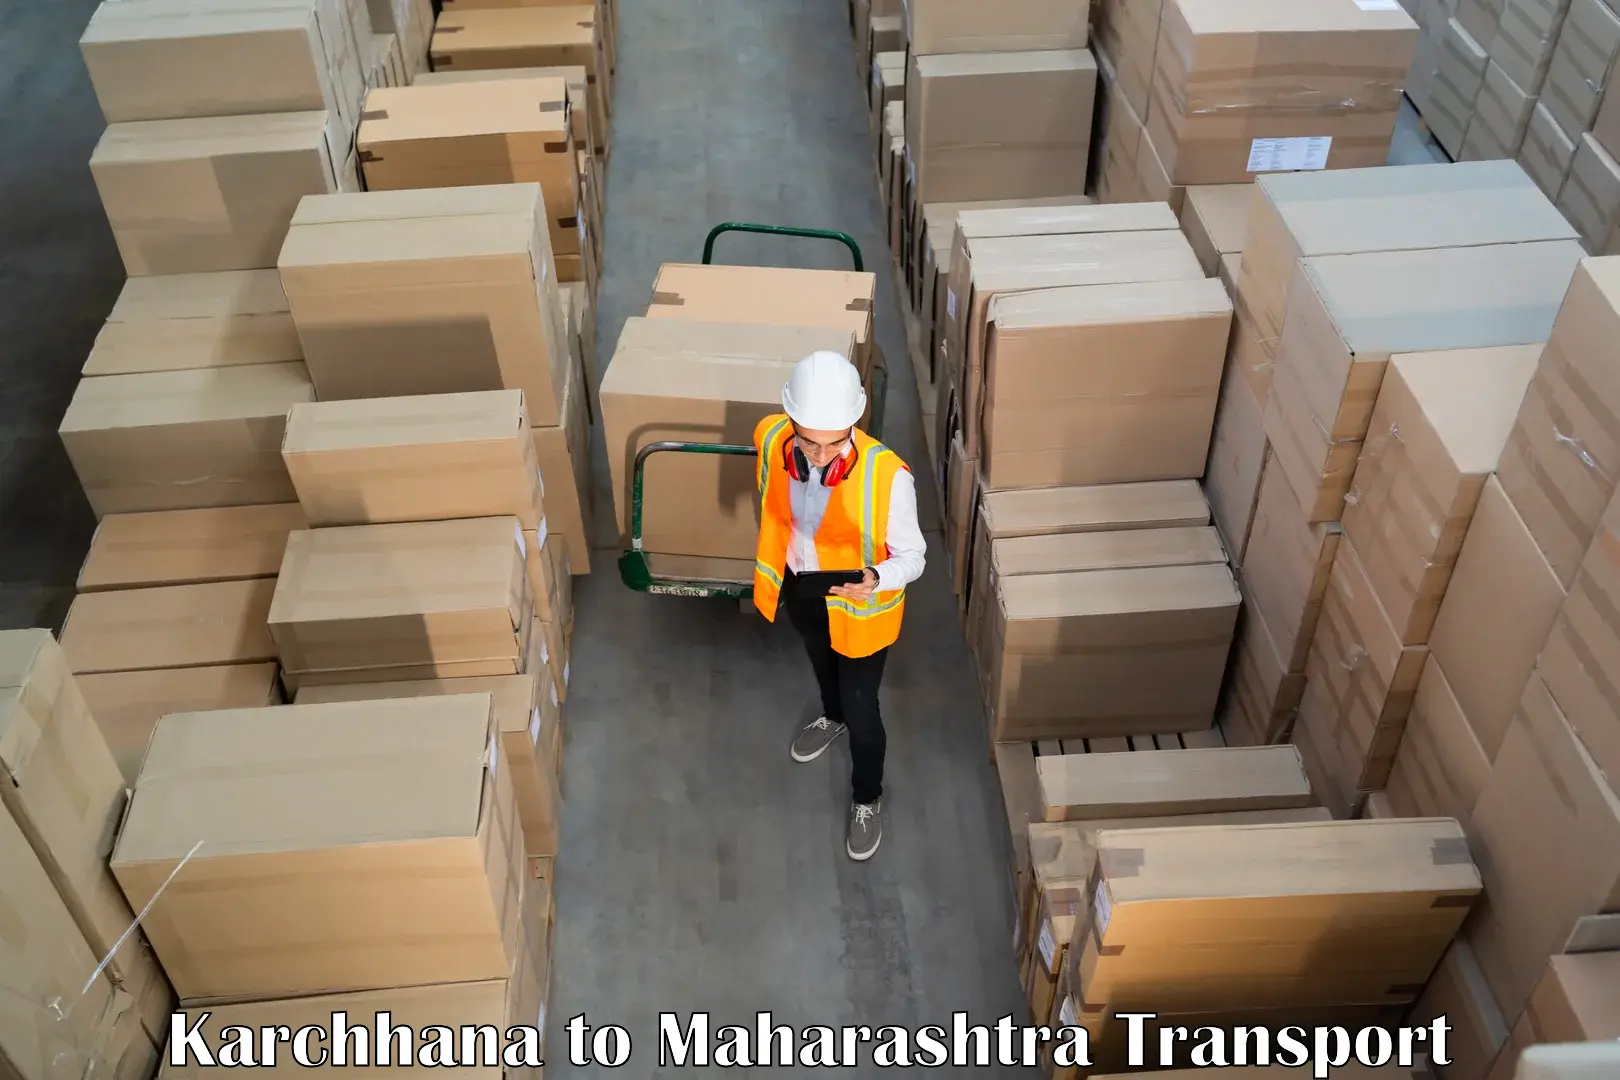 Shipping partner Karchhana to Bhokar